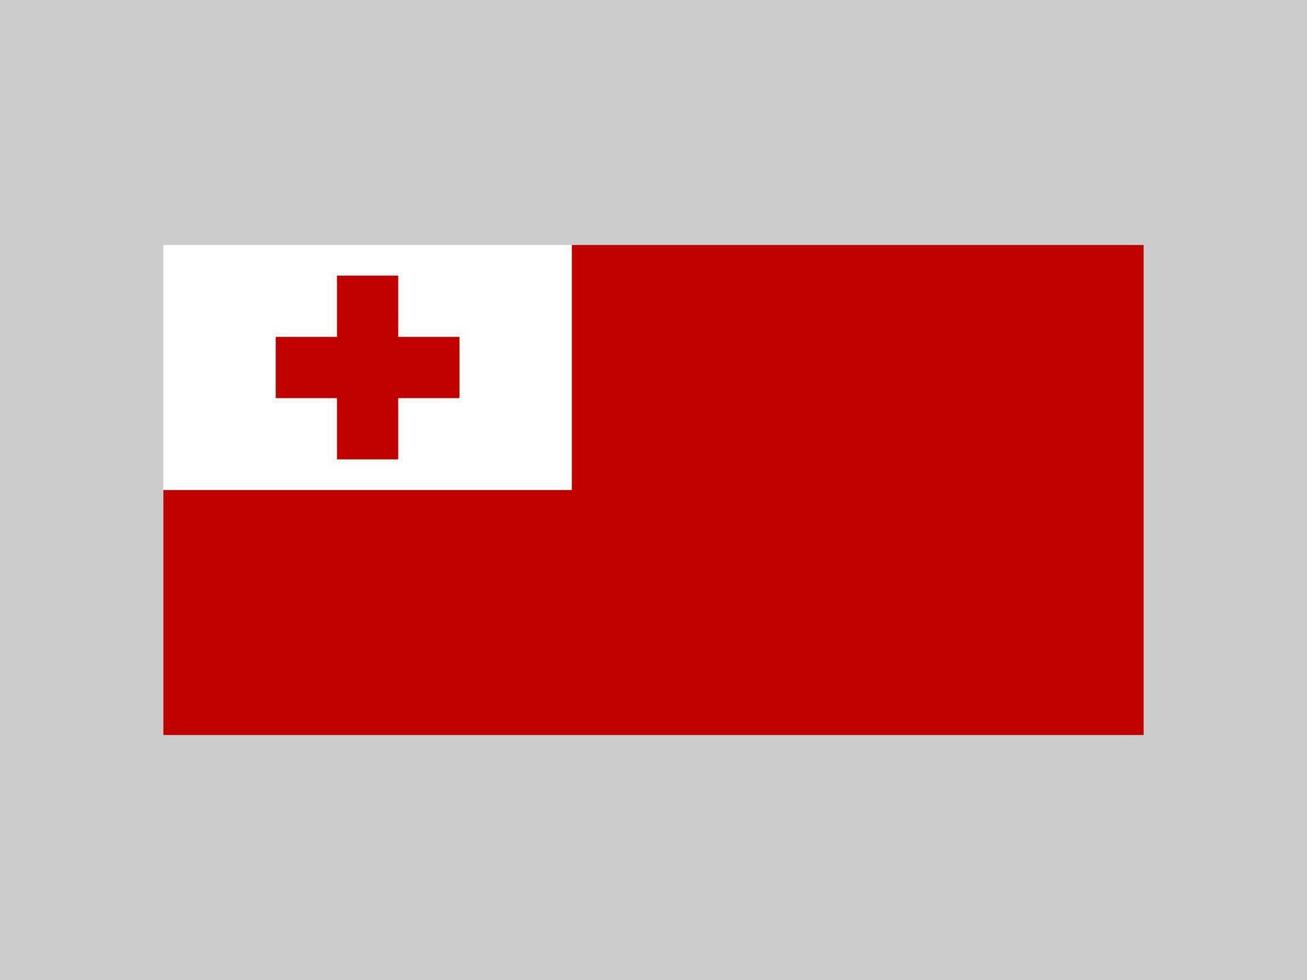 bandeira tonga, cores oficiais e proporção. ilustração vetorial. vetor